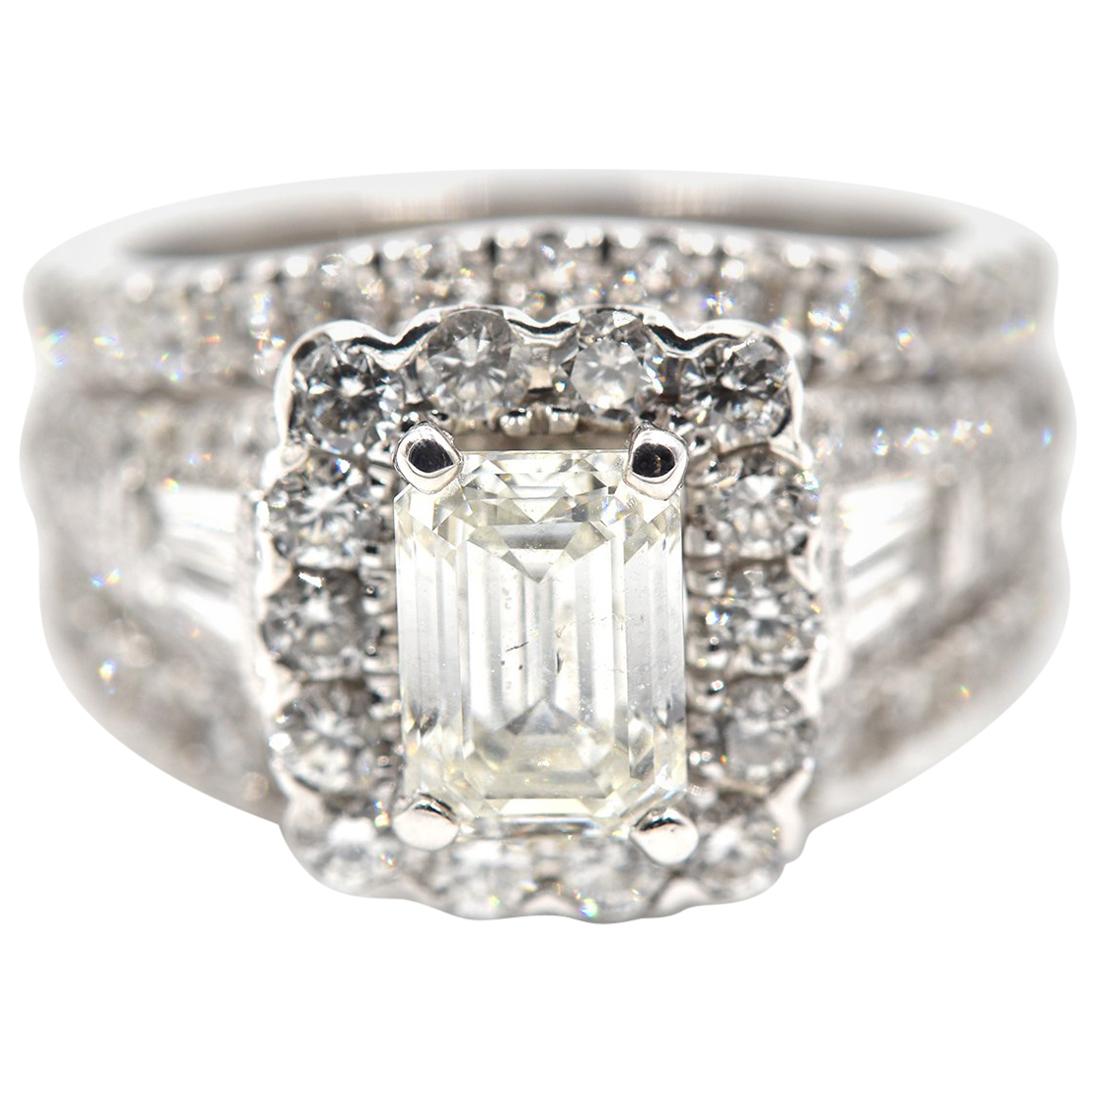 1.17 Carat Emerald Cut Diamond Engagement Ring 14 Karat White Gold